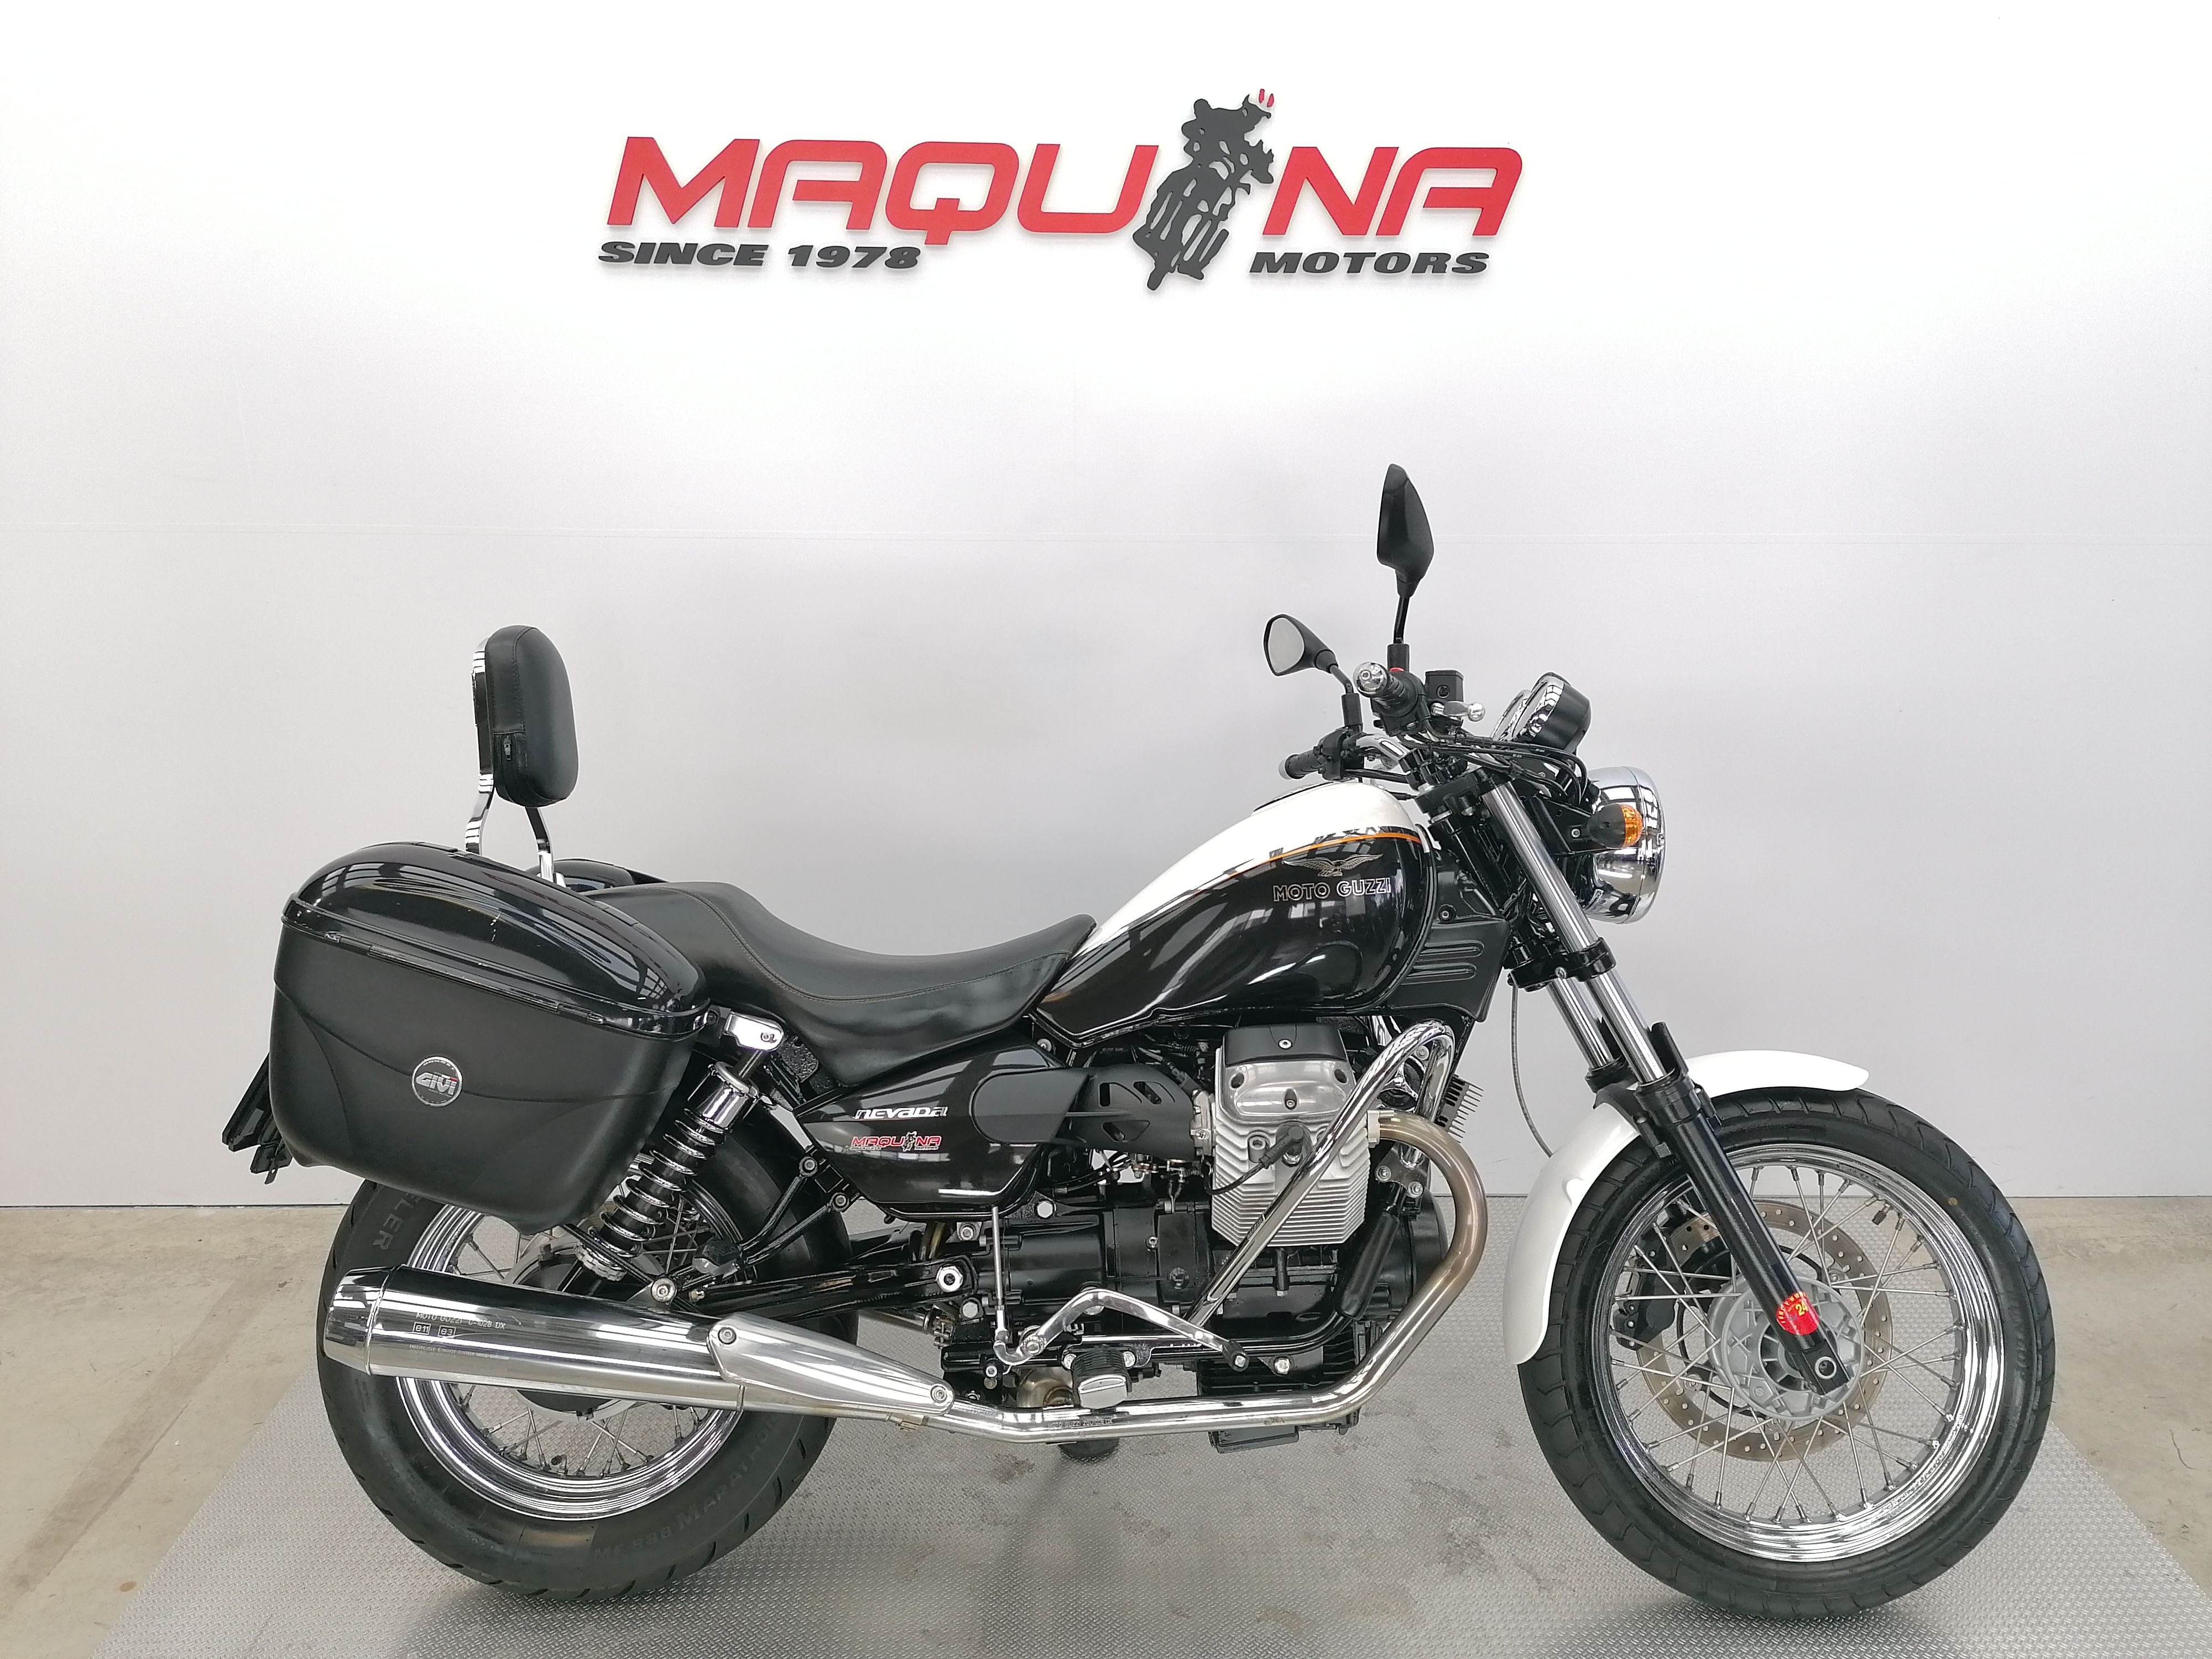 diluido cálmese Calígrafo MOTO GUZZI NEVADA 750 – Maquina Motors motos ocasión